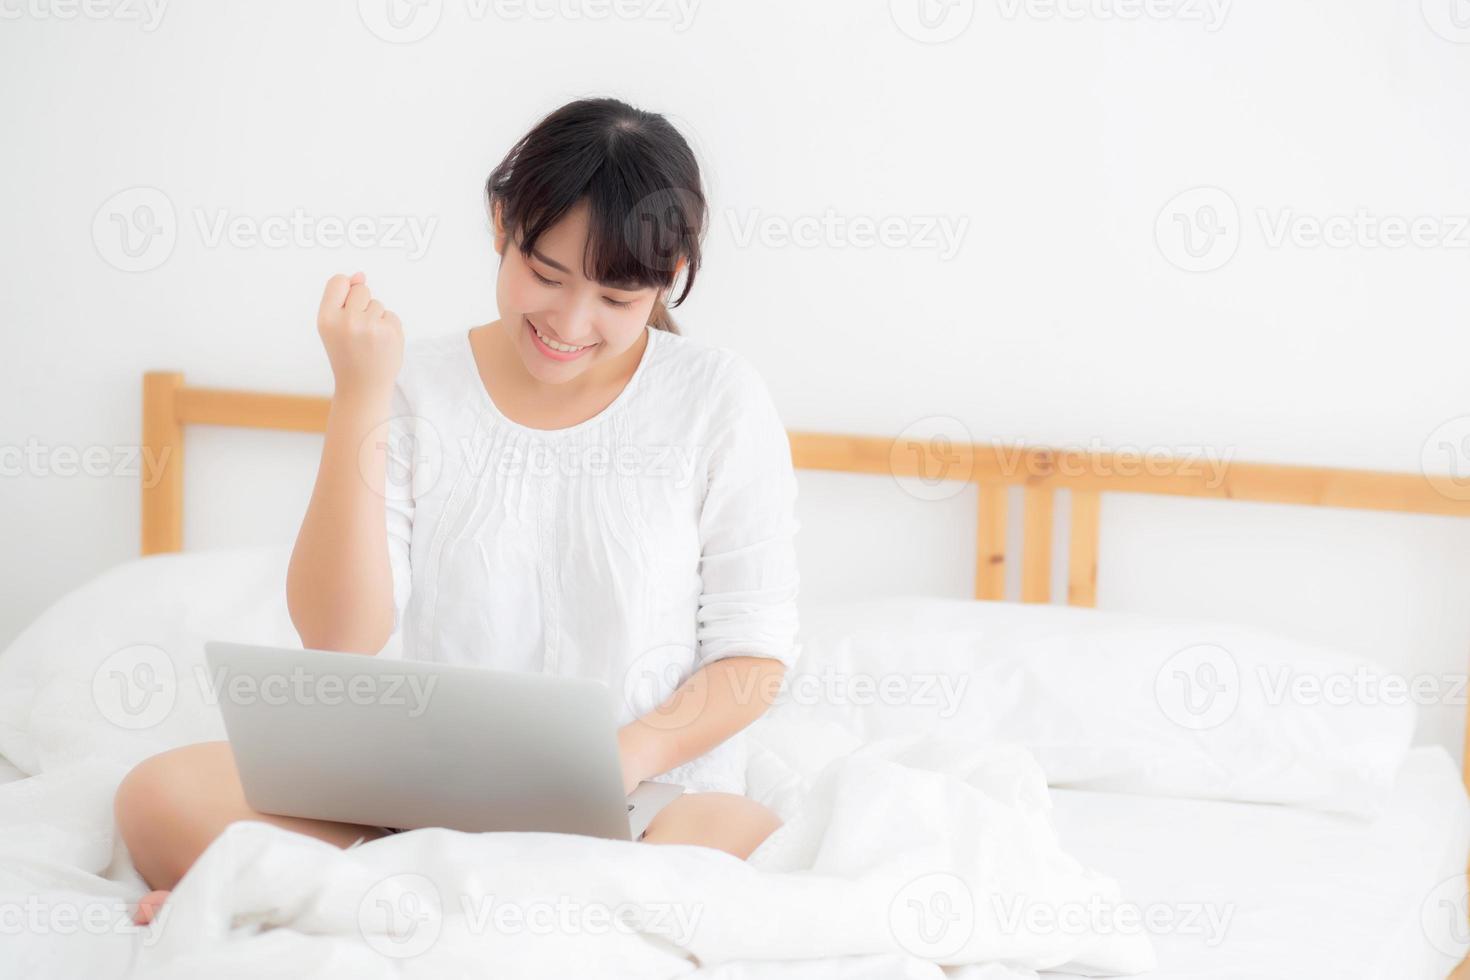 linda de retrato jovem asiático sentado relaxe e lazer com internet de computador portátil on-line na cama no quarto, alegre de garota asiática com gesto feliz e sucesso, conceito de estilo de vida. foto